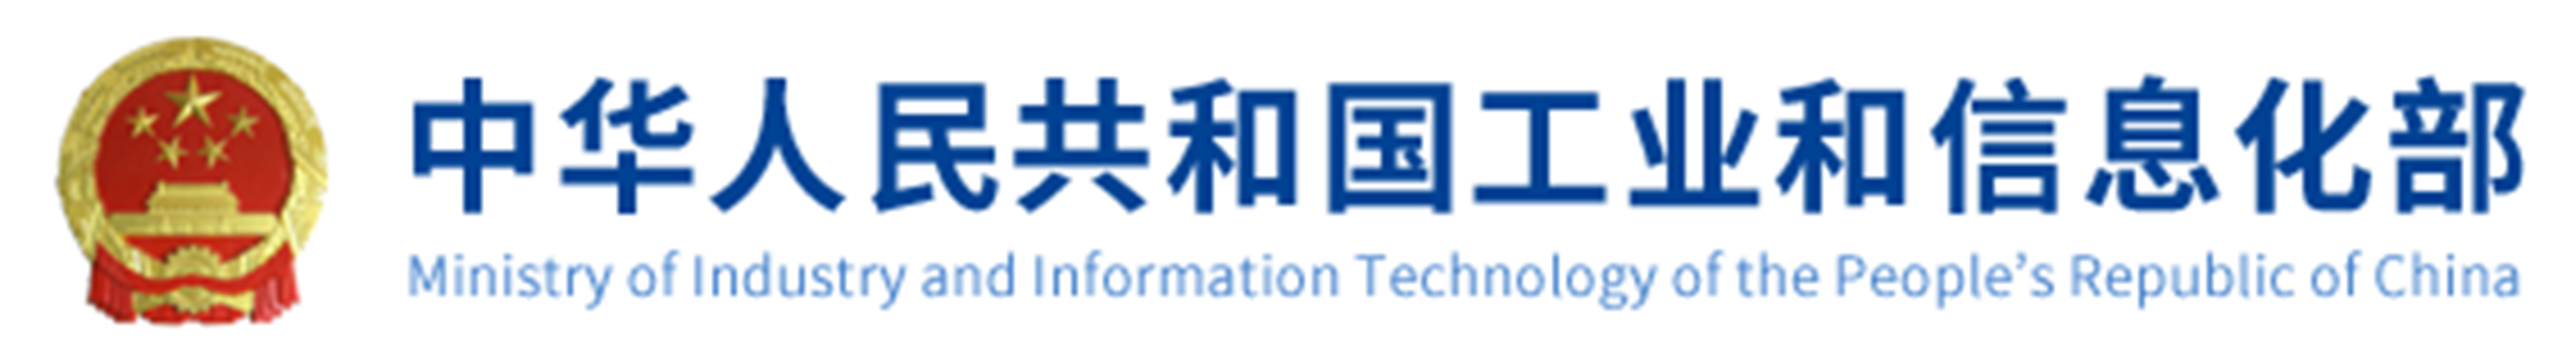 中华人名共和国工业和信息化部